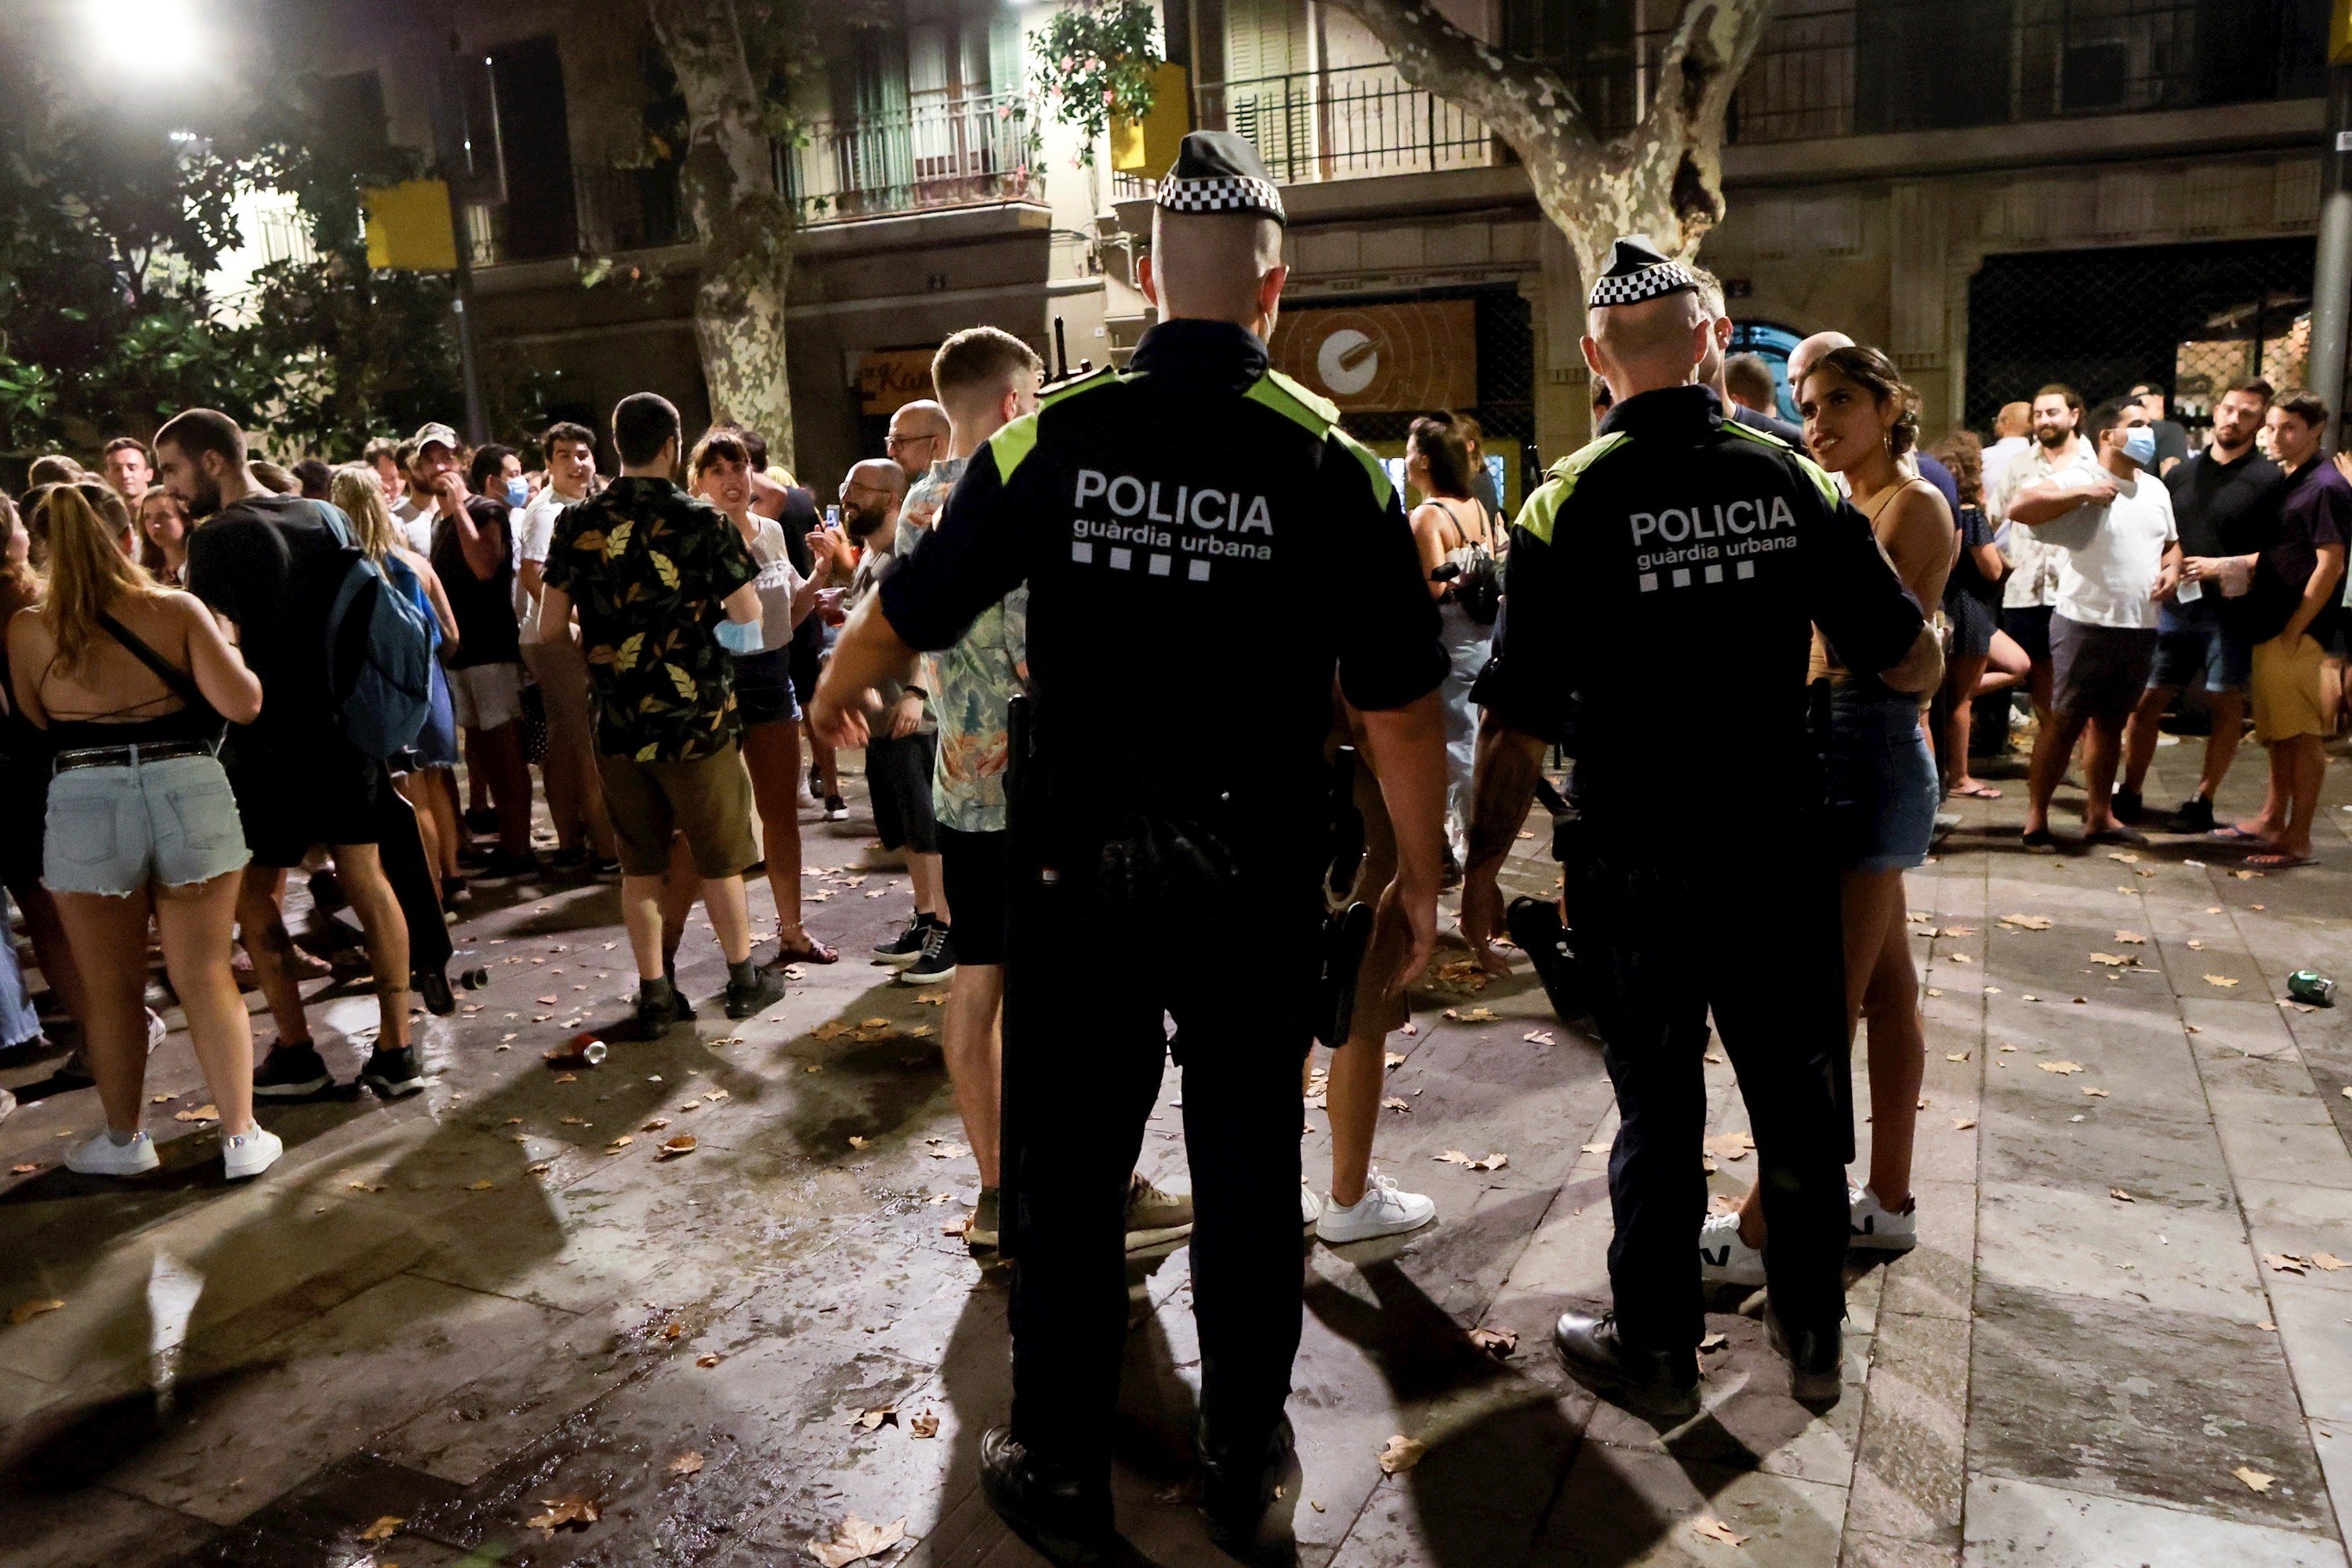 Irritación en Gràcia por el descontrol nocturno: "Esto no lo había vivido nunca"